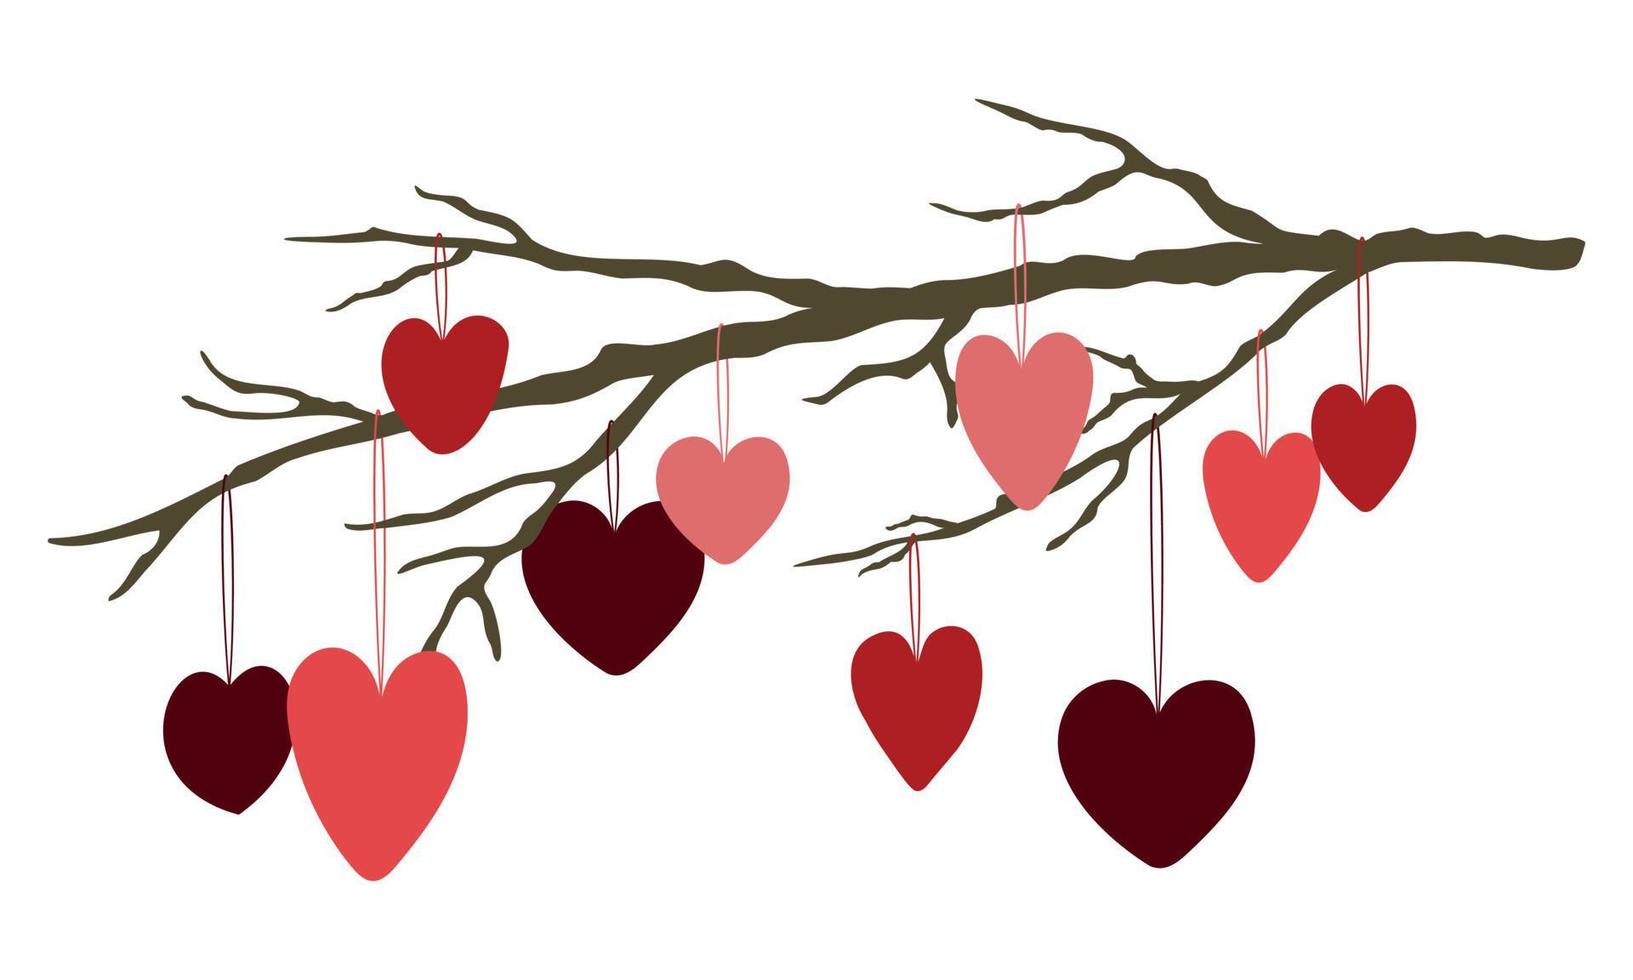 ilustração em vetor bonito dia dos namorados. galho de árvore com corações coloridos pendurados. isolado no fundo branco.